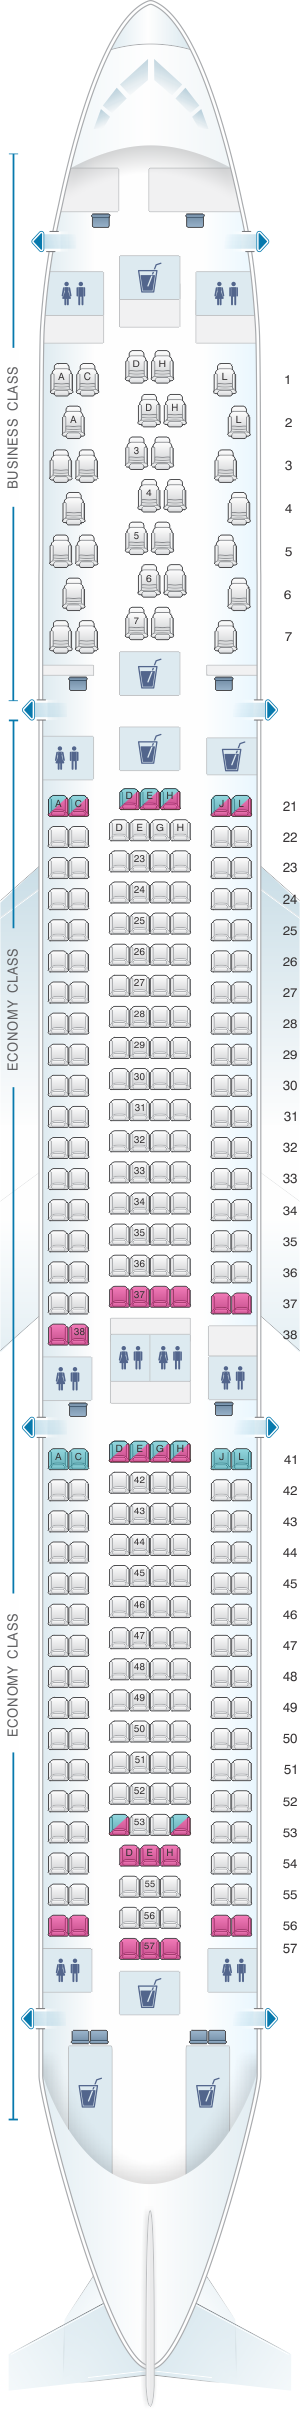 Seat Map Finnair Airbus A330 300 297pax